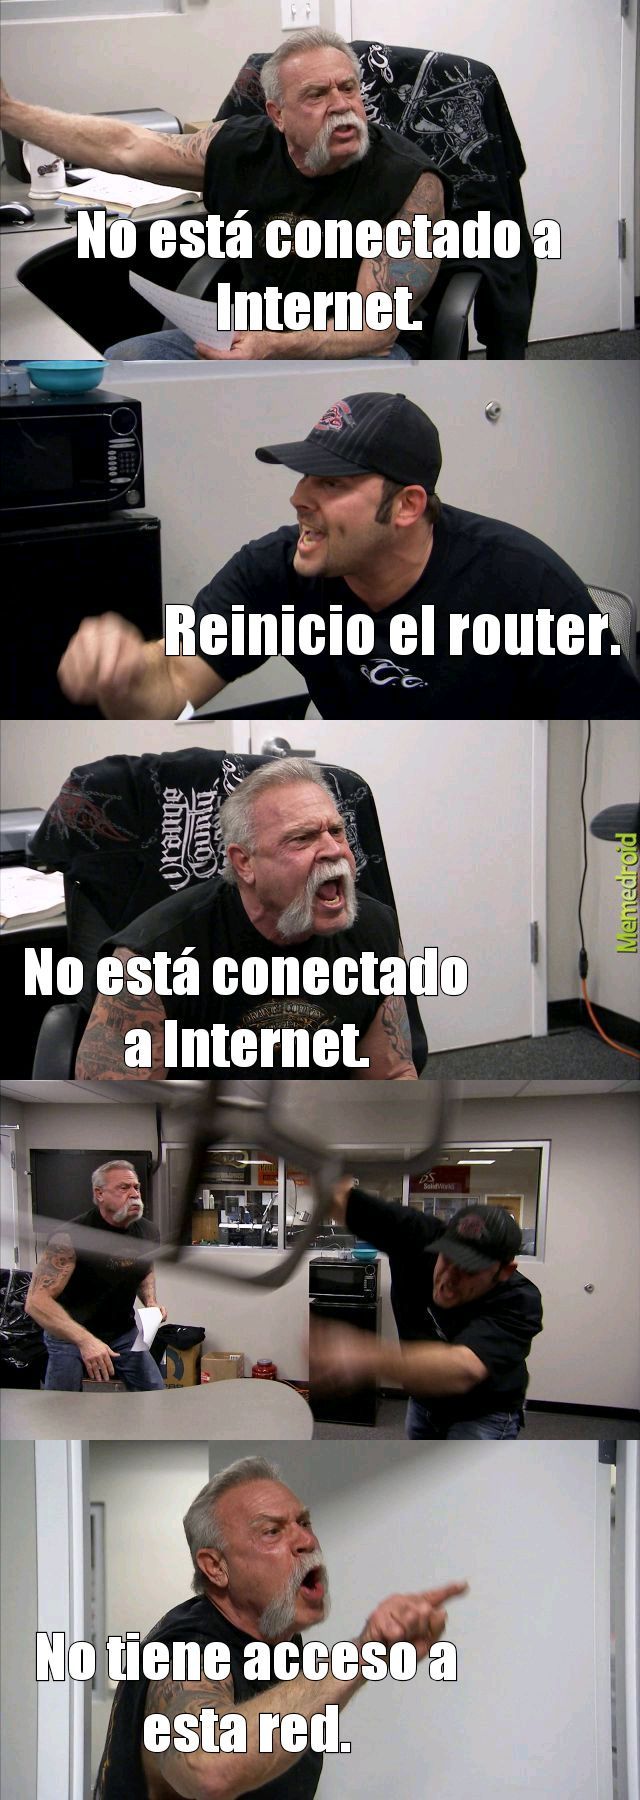 Internet. - meme